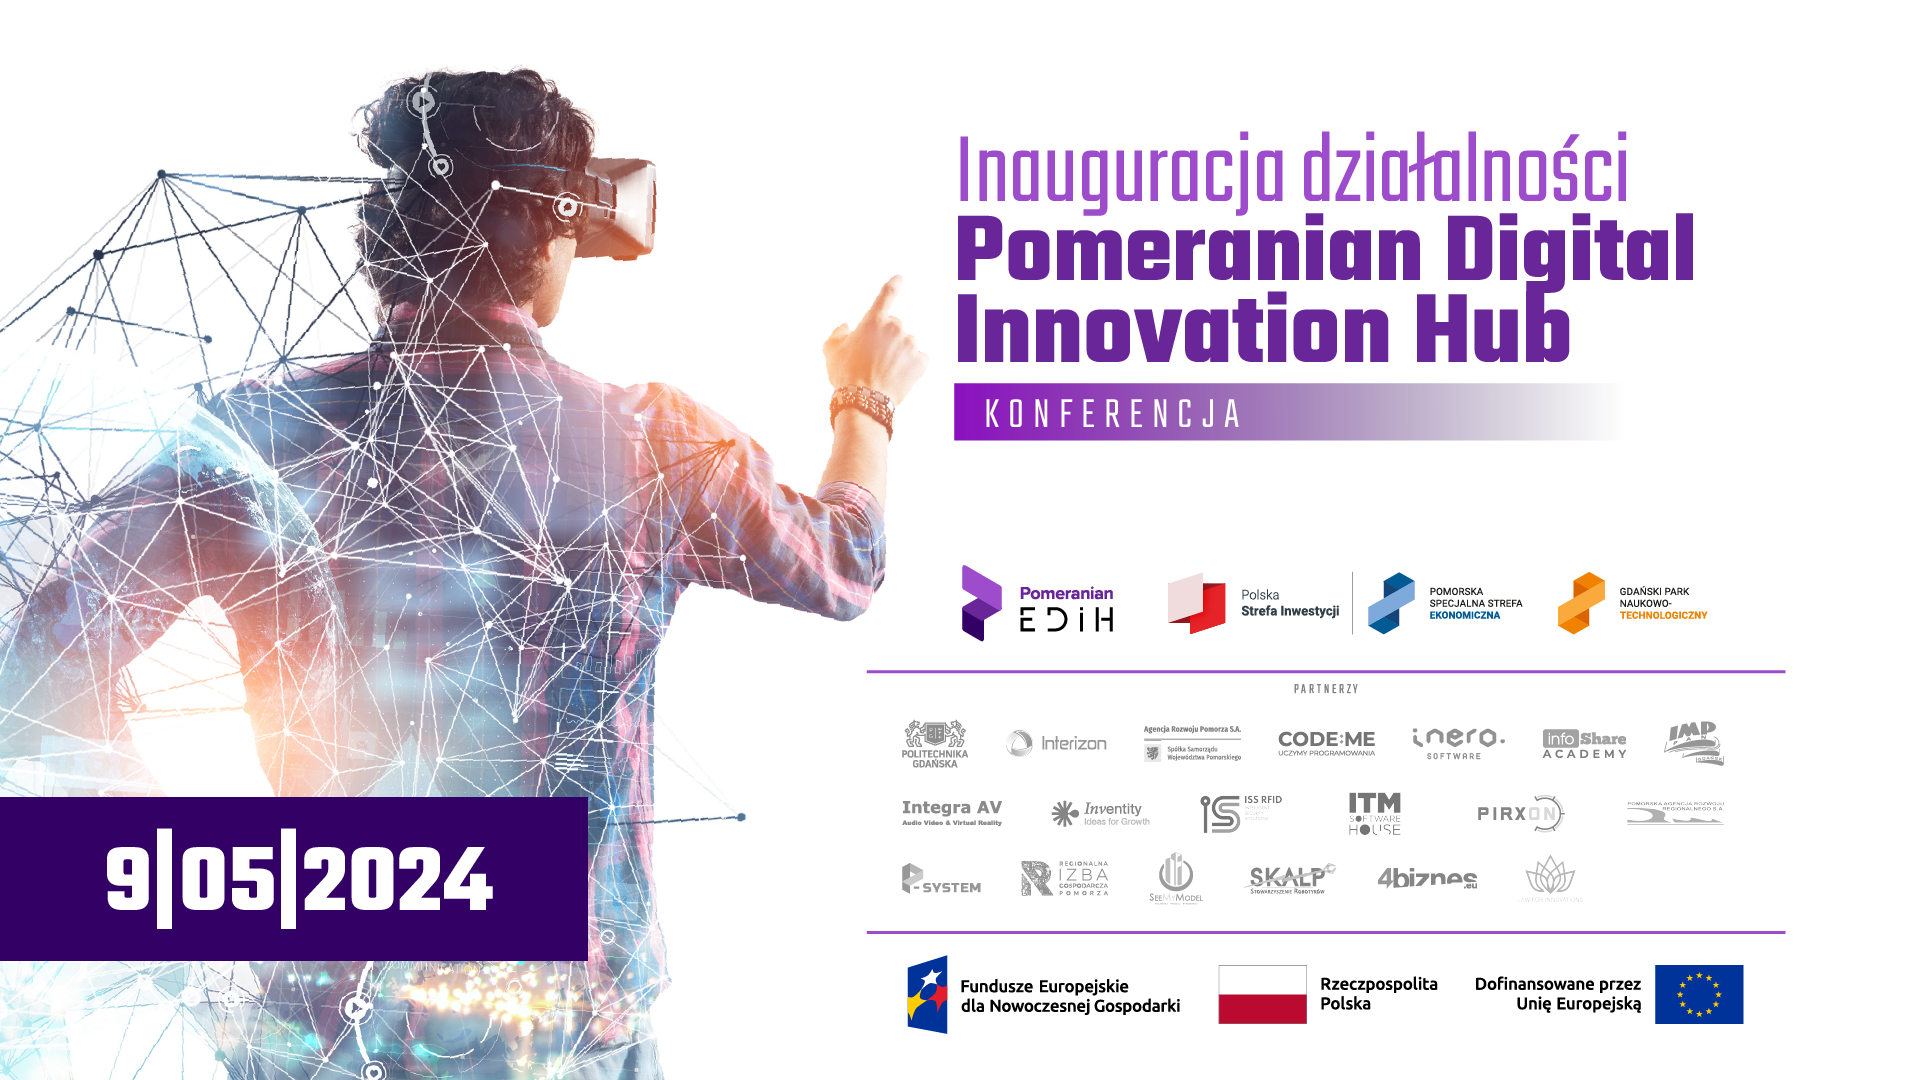 Po prawej stronie znajduje się logo Pomeranian Digital Innovation Hub oraz loga partnerów wydarzenia. Po lewej stronie znajduje się mężczyzna w okularach goglach VR odwrócony plecami na tle abstrakcyjnych elementów technologicznych takich linie, siatki.